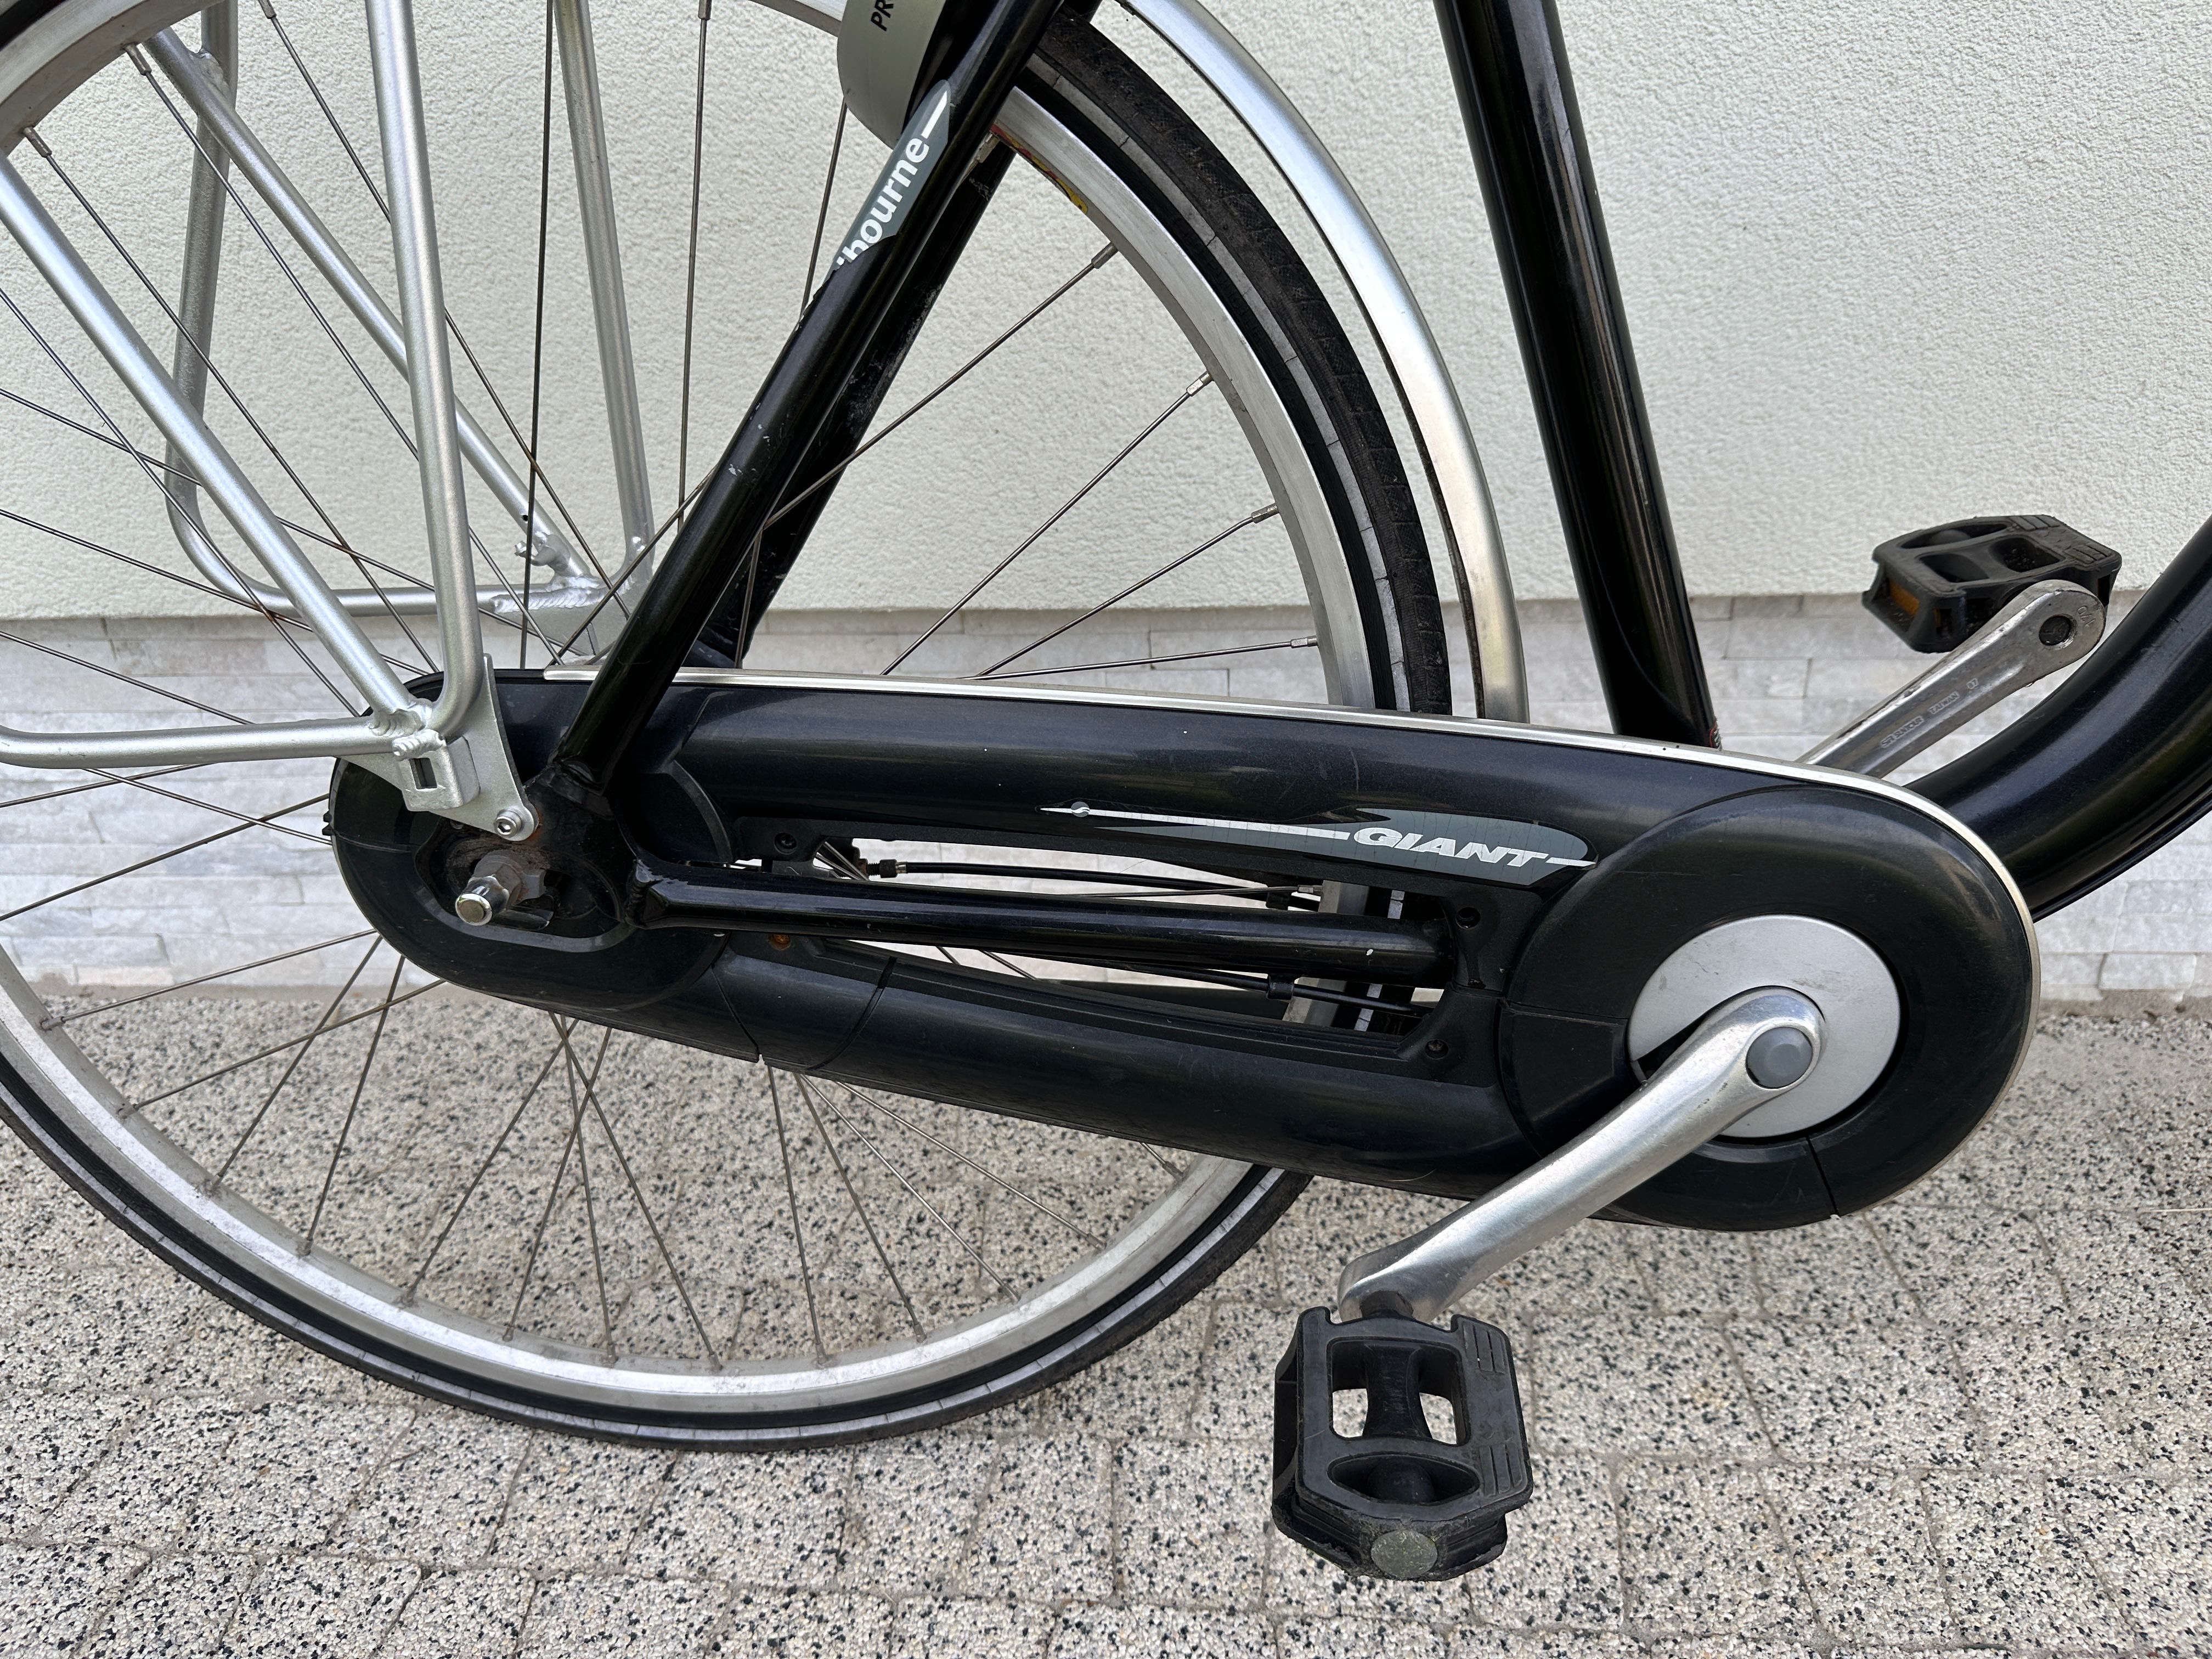 Rower GIANT - koła 28, Shimano Nexus 7 biegów, prądnica w kole